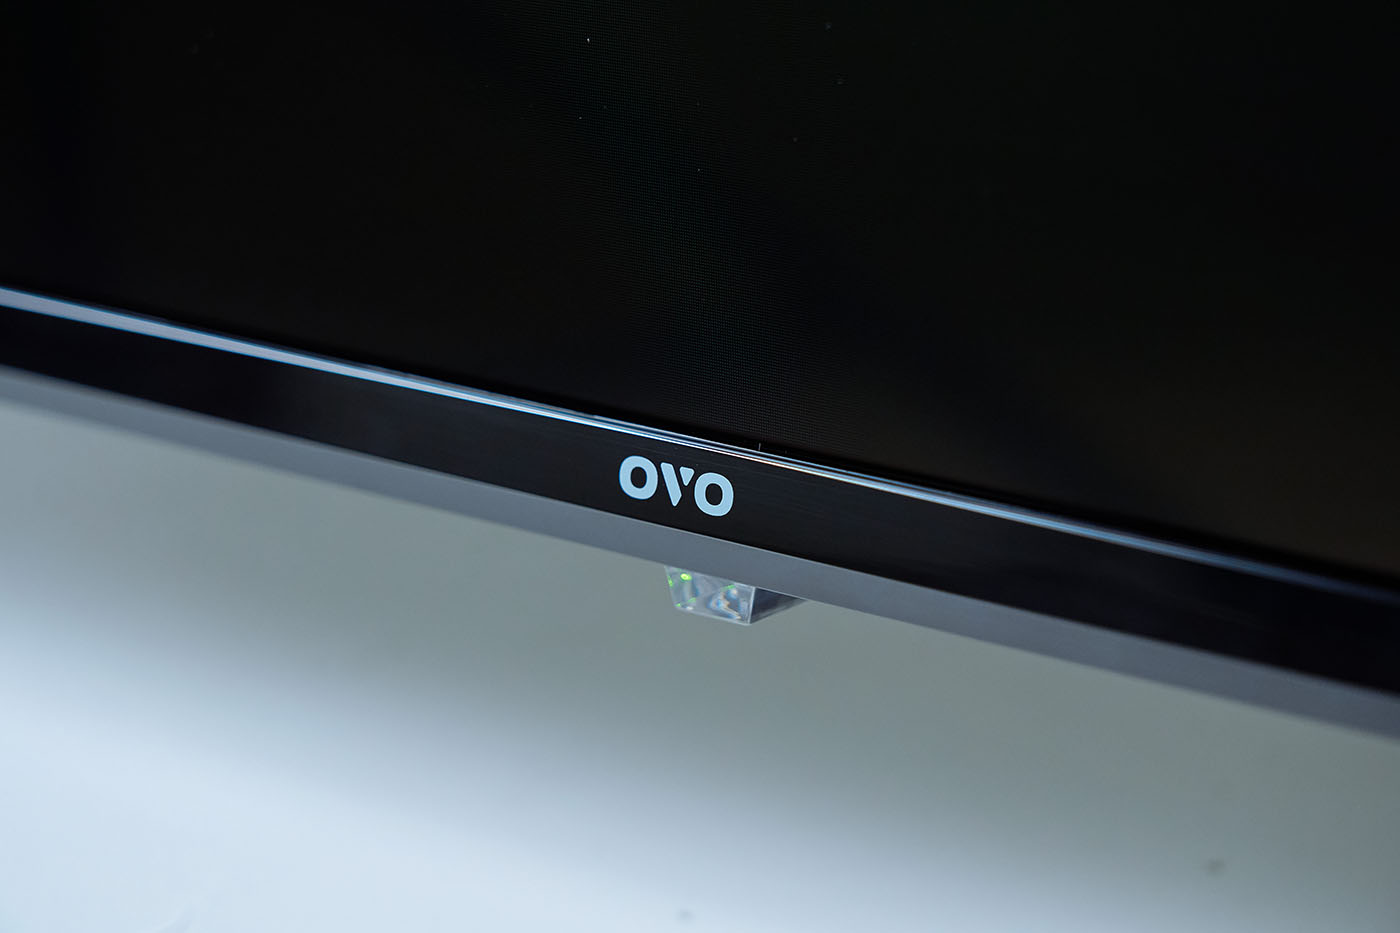 螢幕下方央則有相當低調的 OVO 商標，以及最下方的 LED 指示燈。 ▲ 採用亮面處理的腳座以輕量化計為主，但仍擁有十分穩固的支撐性，並為 T65 帶來十分高級的質感。